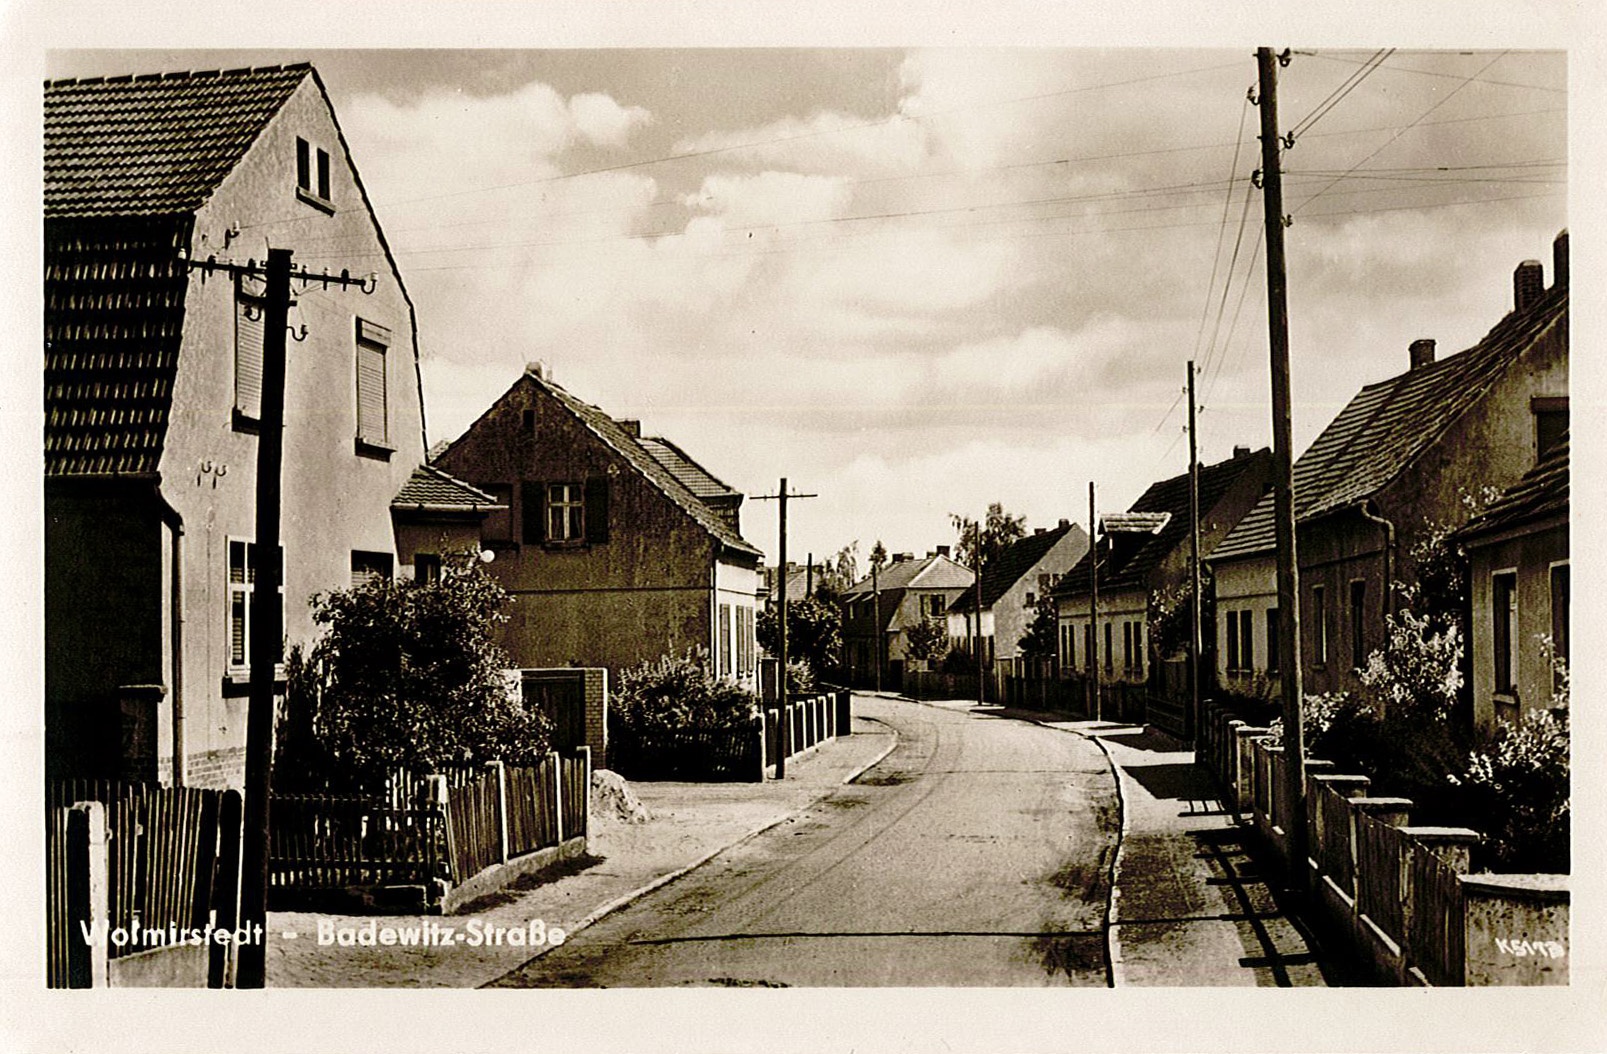 Ansichtskarte: Wolmirstedt - Badewitz-Straße (Museum Wolmirstedt RR-F)